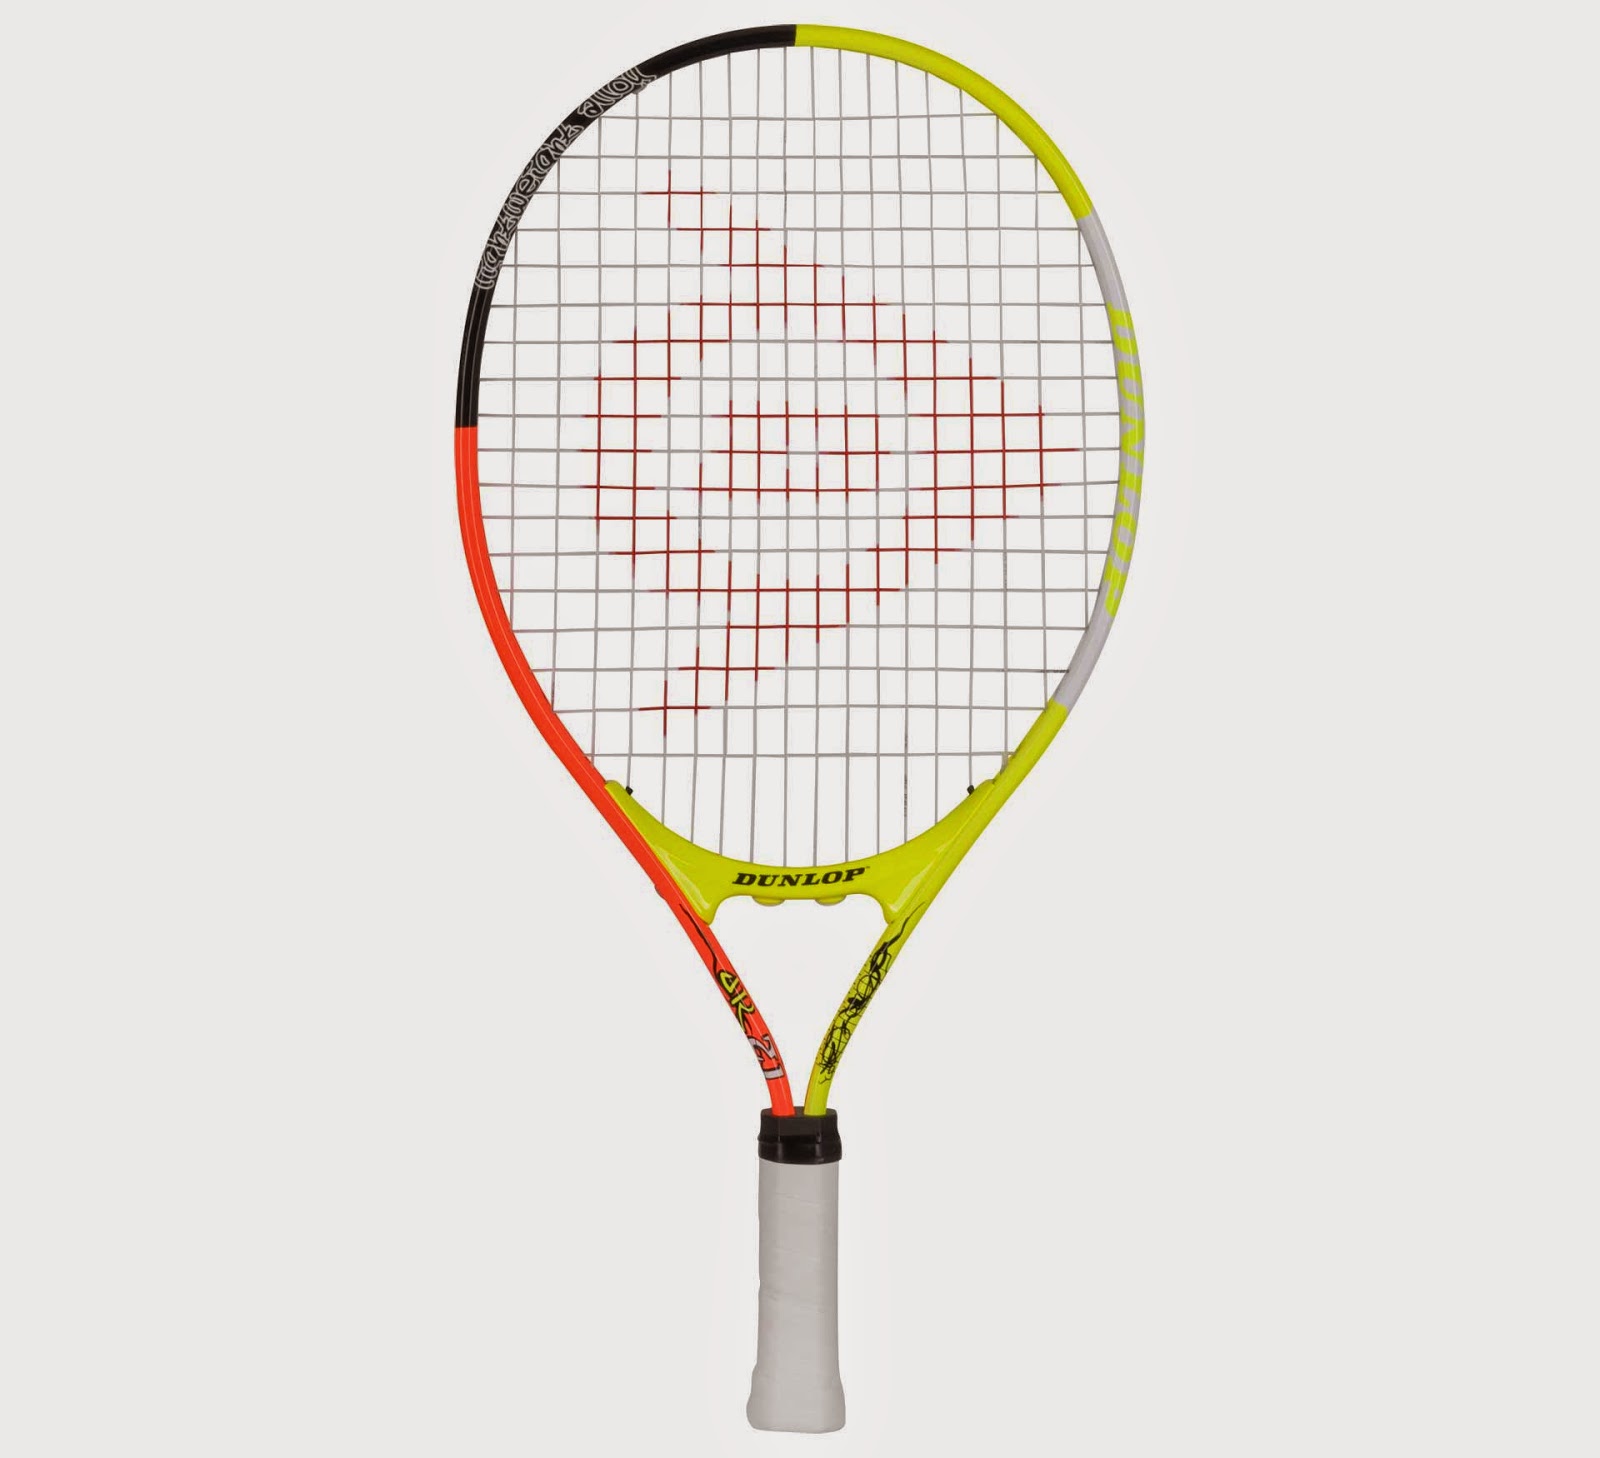 Dalset lila archief Tennisclub TIOLO: Hoe kies ik een kinder tennisracket?